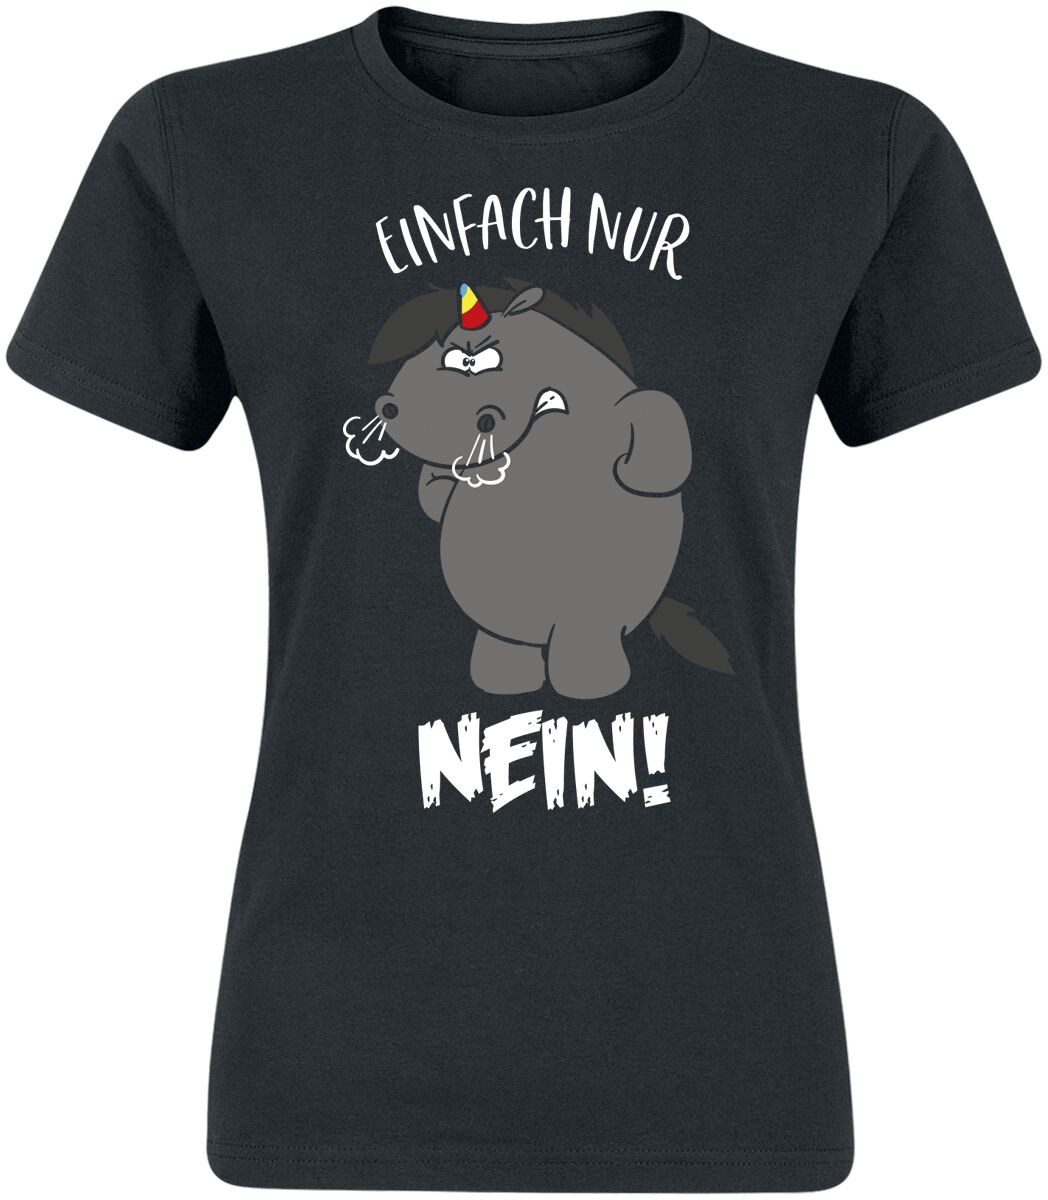 T-Shirt Manches courtes Unicorn de Chubby Unicorn - Einfach nur Nein! - S à XXL - pour Femme - noir